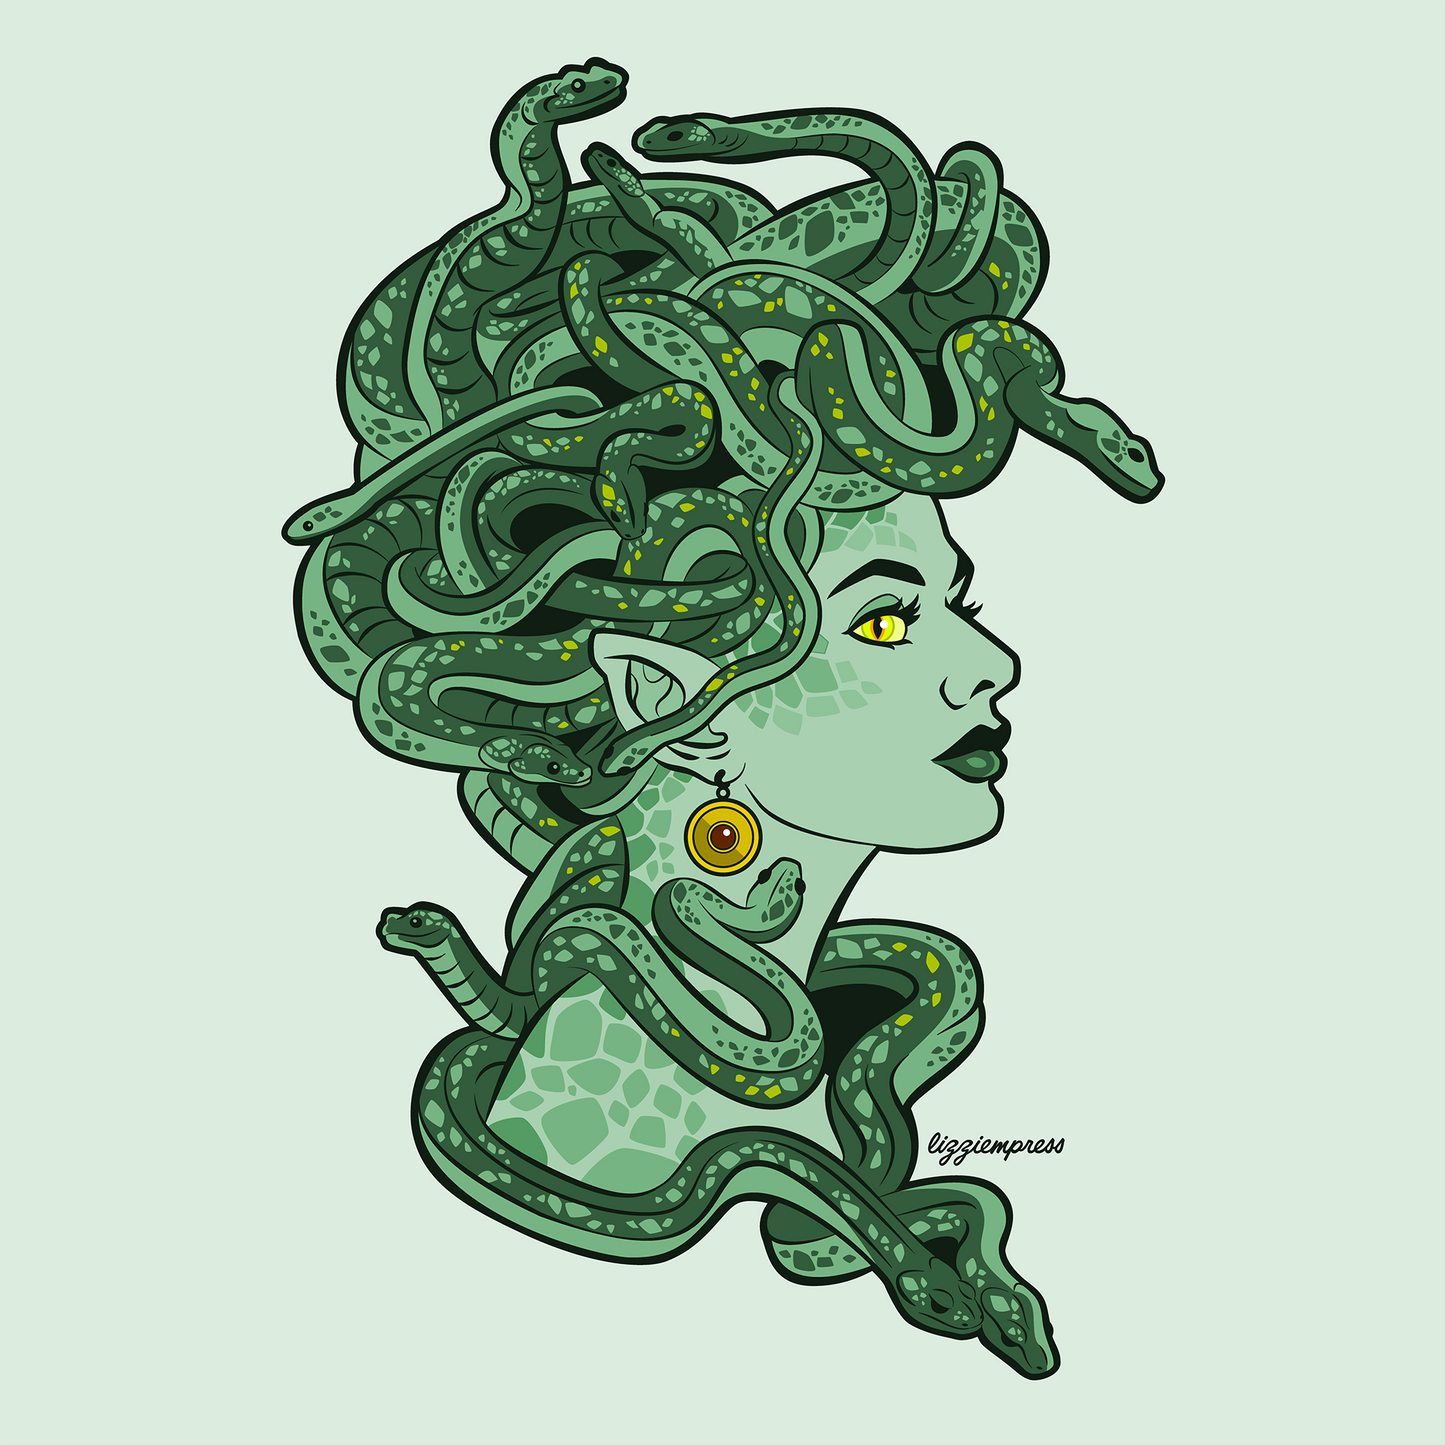 Absinthe Green Medusa Sticker (3x3 inches)